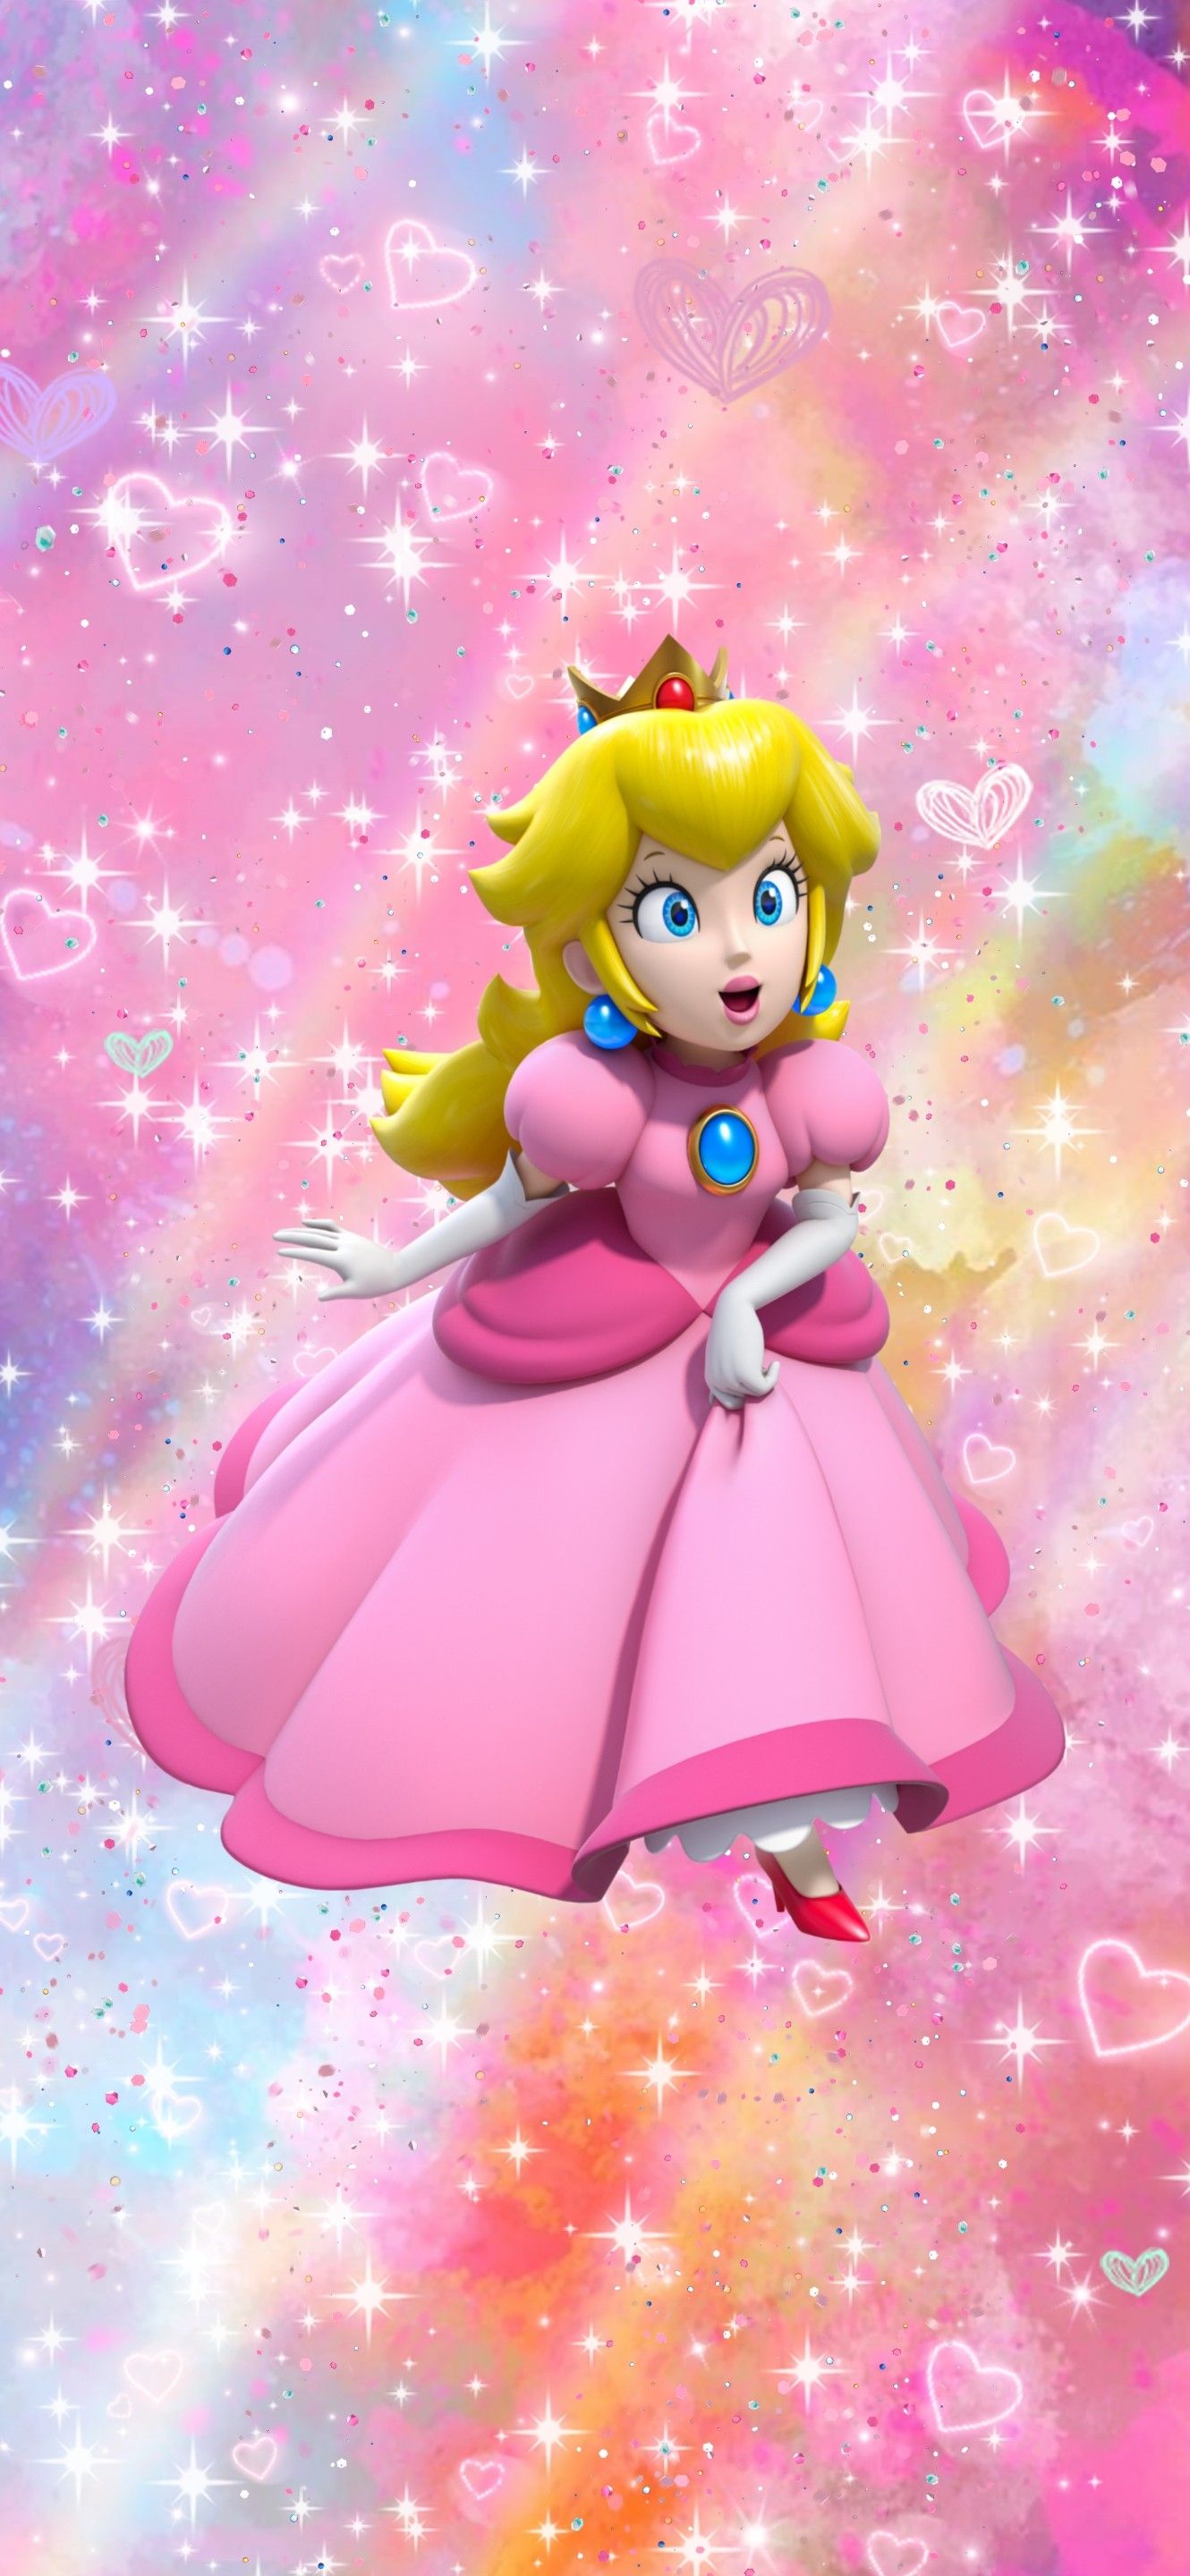 Nintendo Princess Peach aesthetic phone background wallpaper. Nintendo princess, Princess peach, Super princess peach